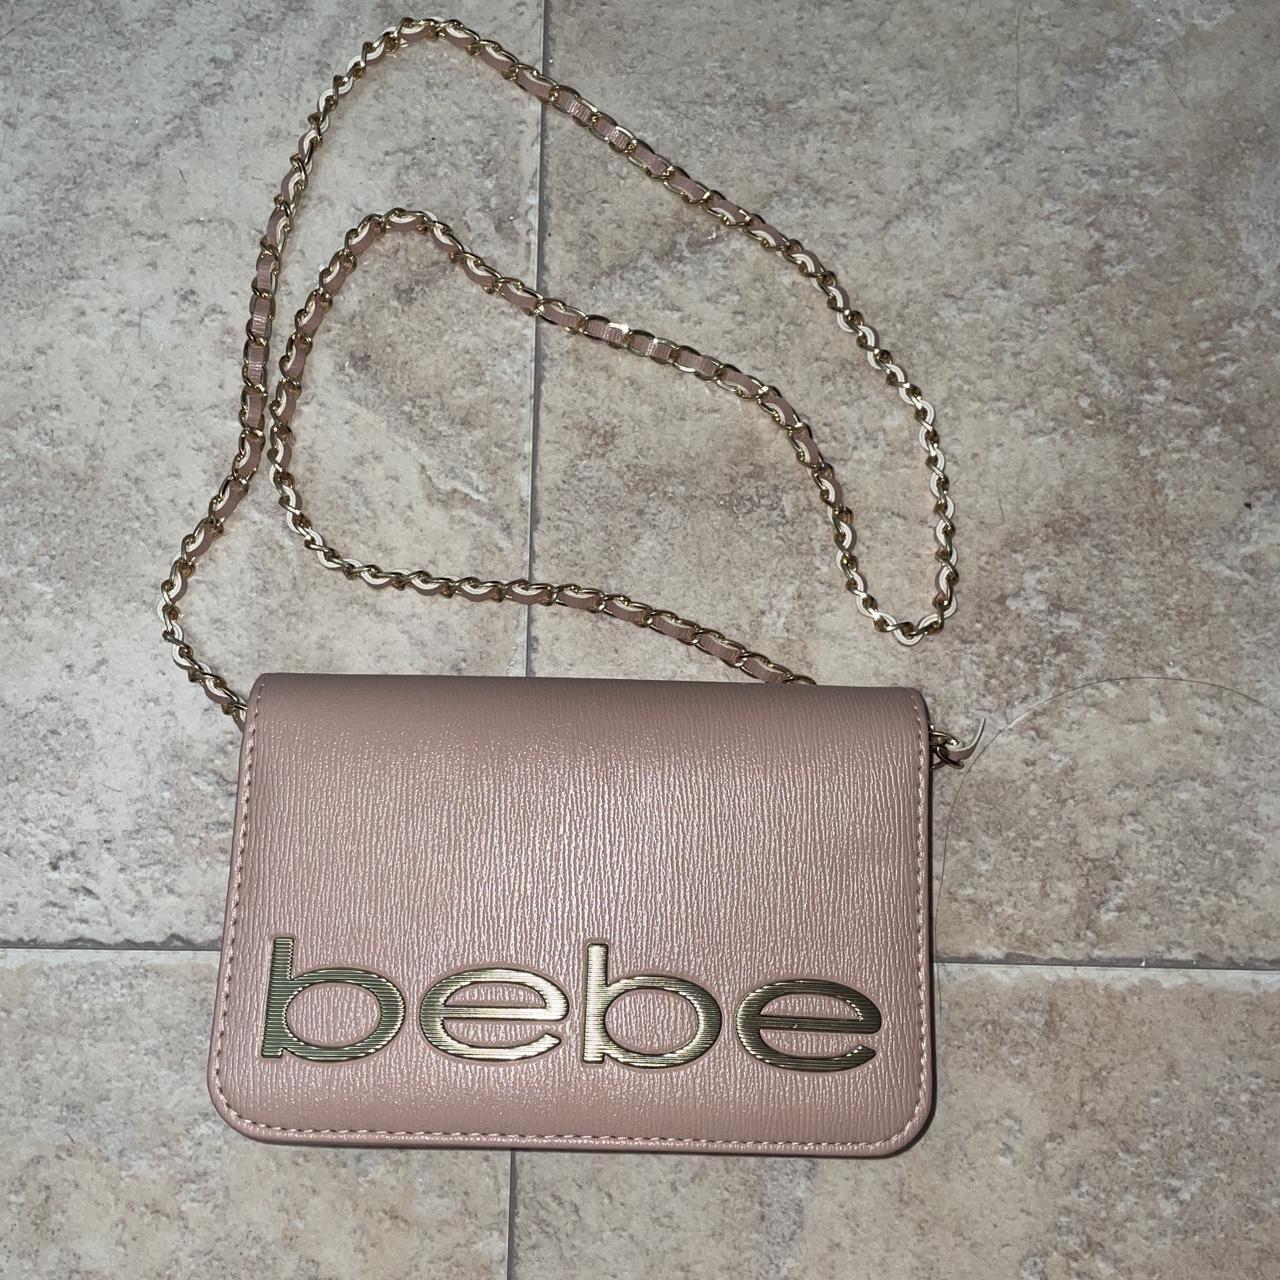 Bebe Women's Bag - Pink